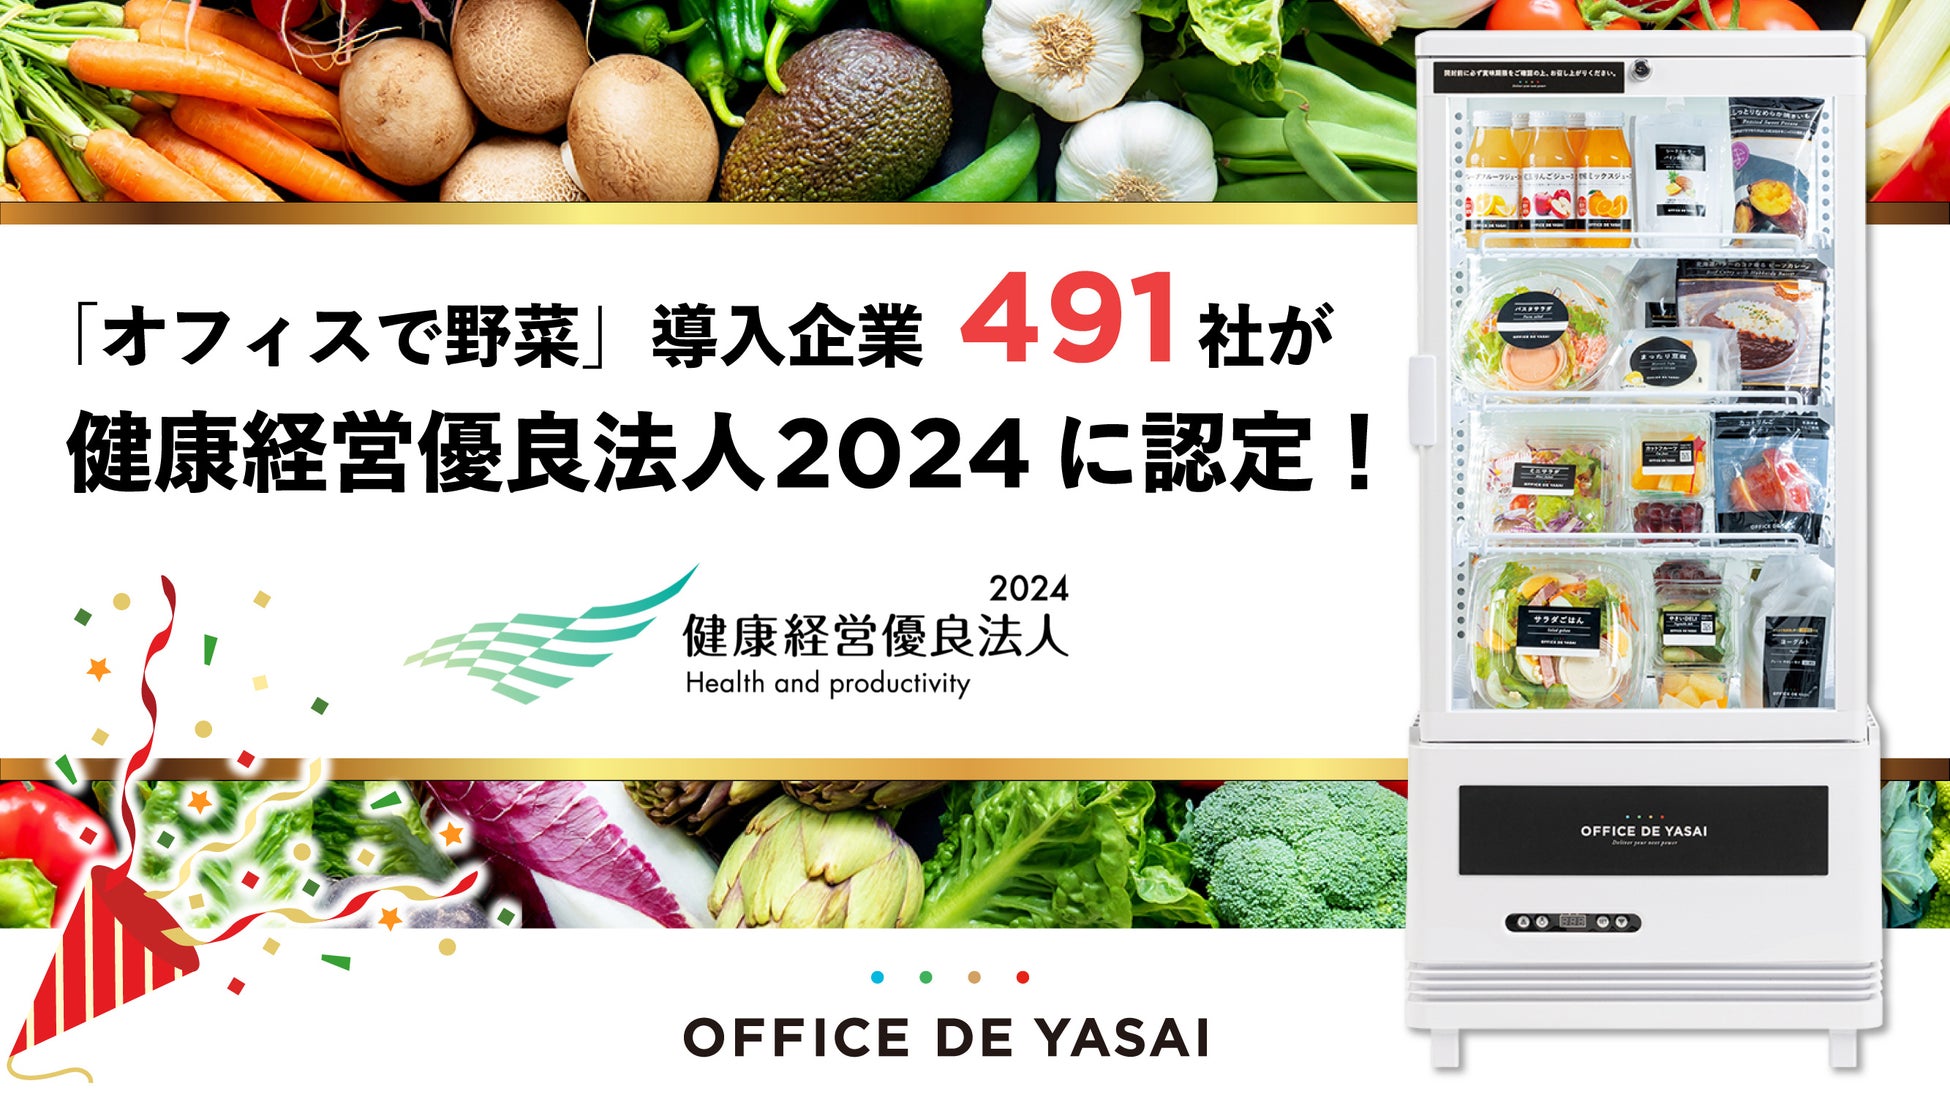 世界唯一の“真空特許技術”をもつインターホールディングス、アジア最大級の食品・飲料の展示会「THAIFEX」で、「Taste Innovation Show 2024 Winners」に選出